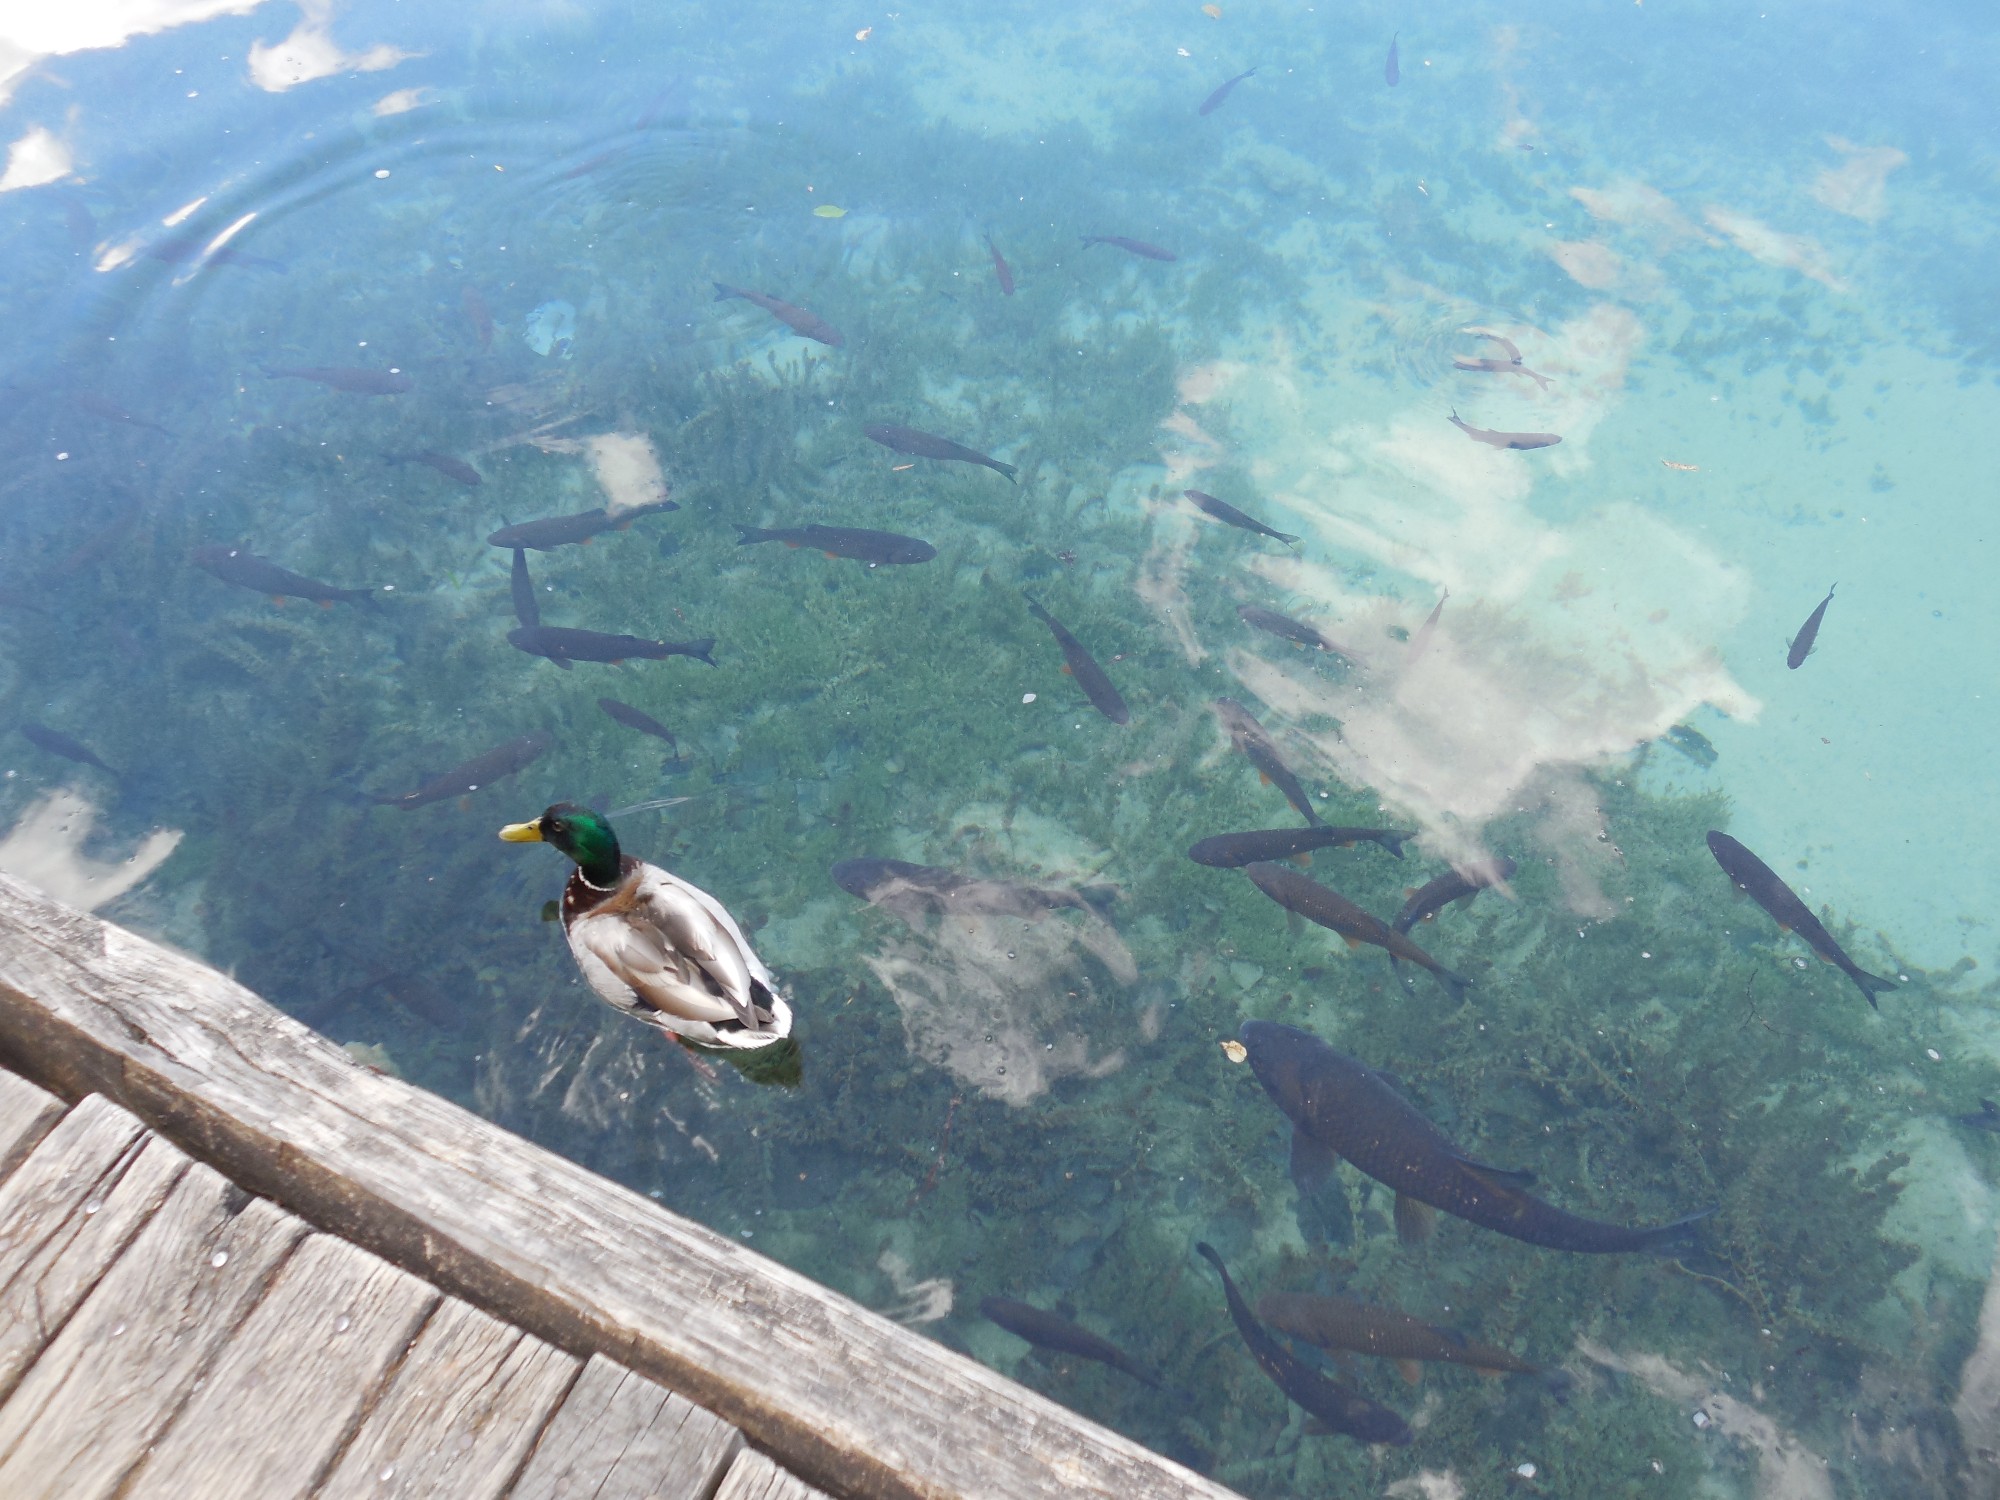 Вода в Плитвицких озерах чистейшая. У плавающих уточек видны даже красные ножки, а рыбы хвастаются перед нами своими цветными плавниками.